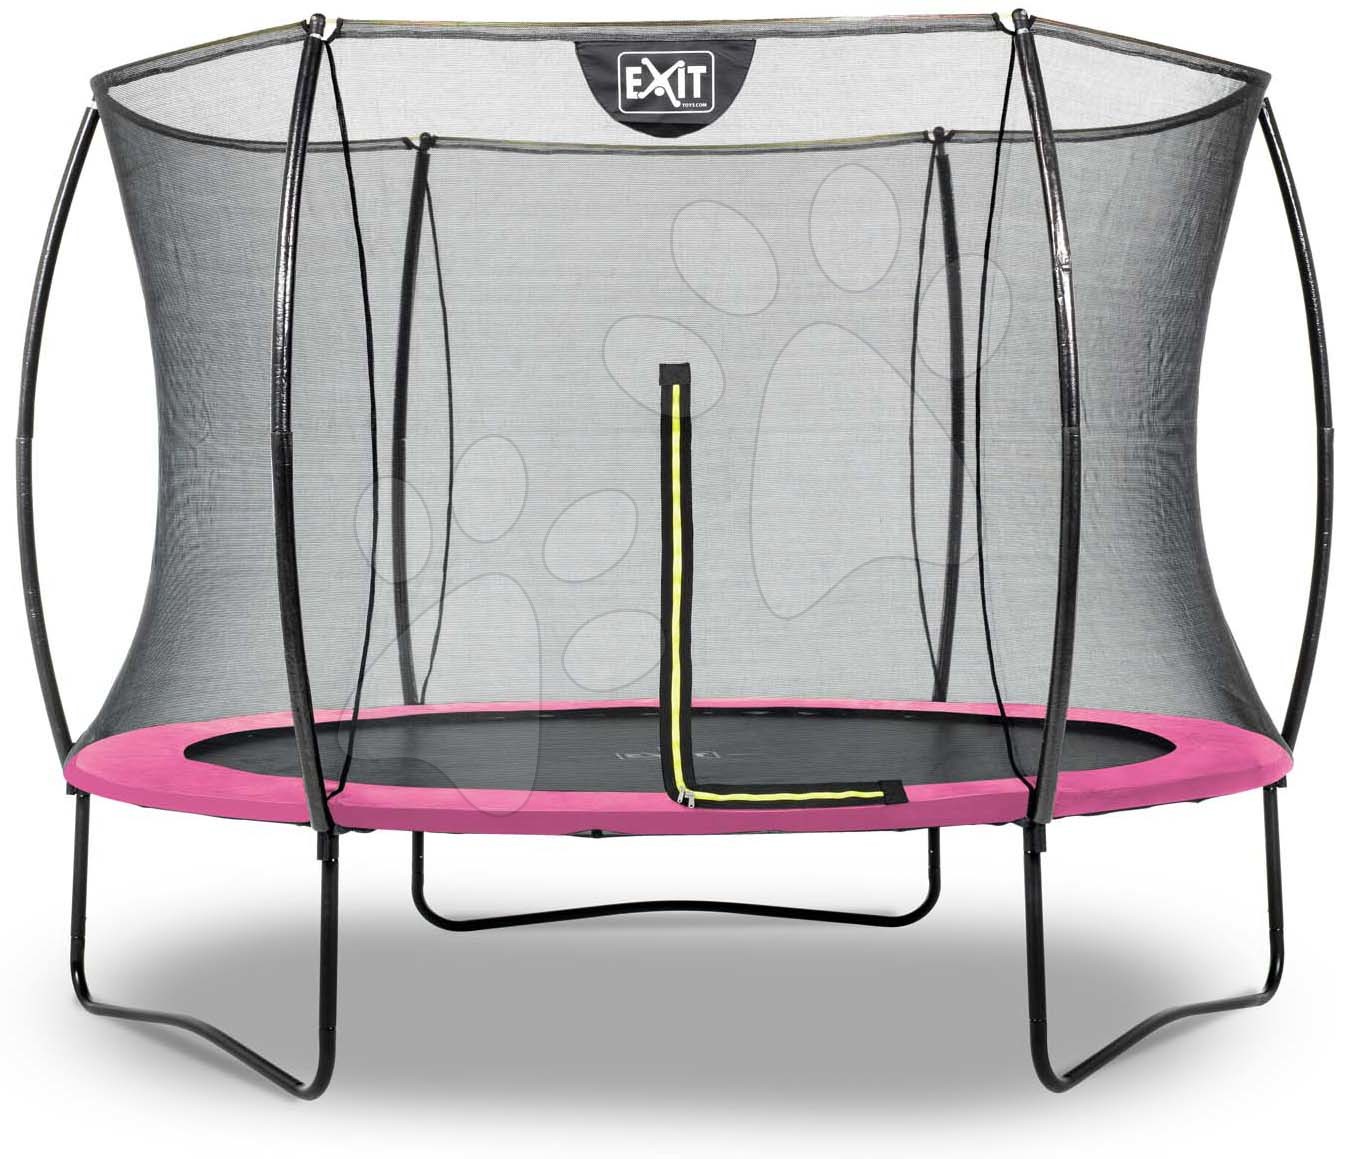 Trampolína s ochrannou sítí Silhouette trampoline Pink Exit Toys kulatá průměr 244 cm růžová